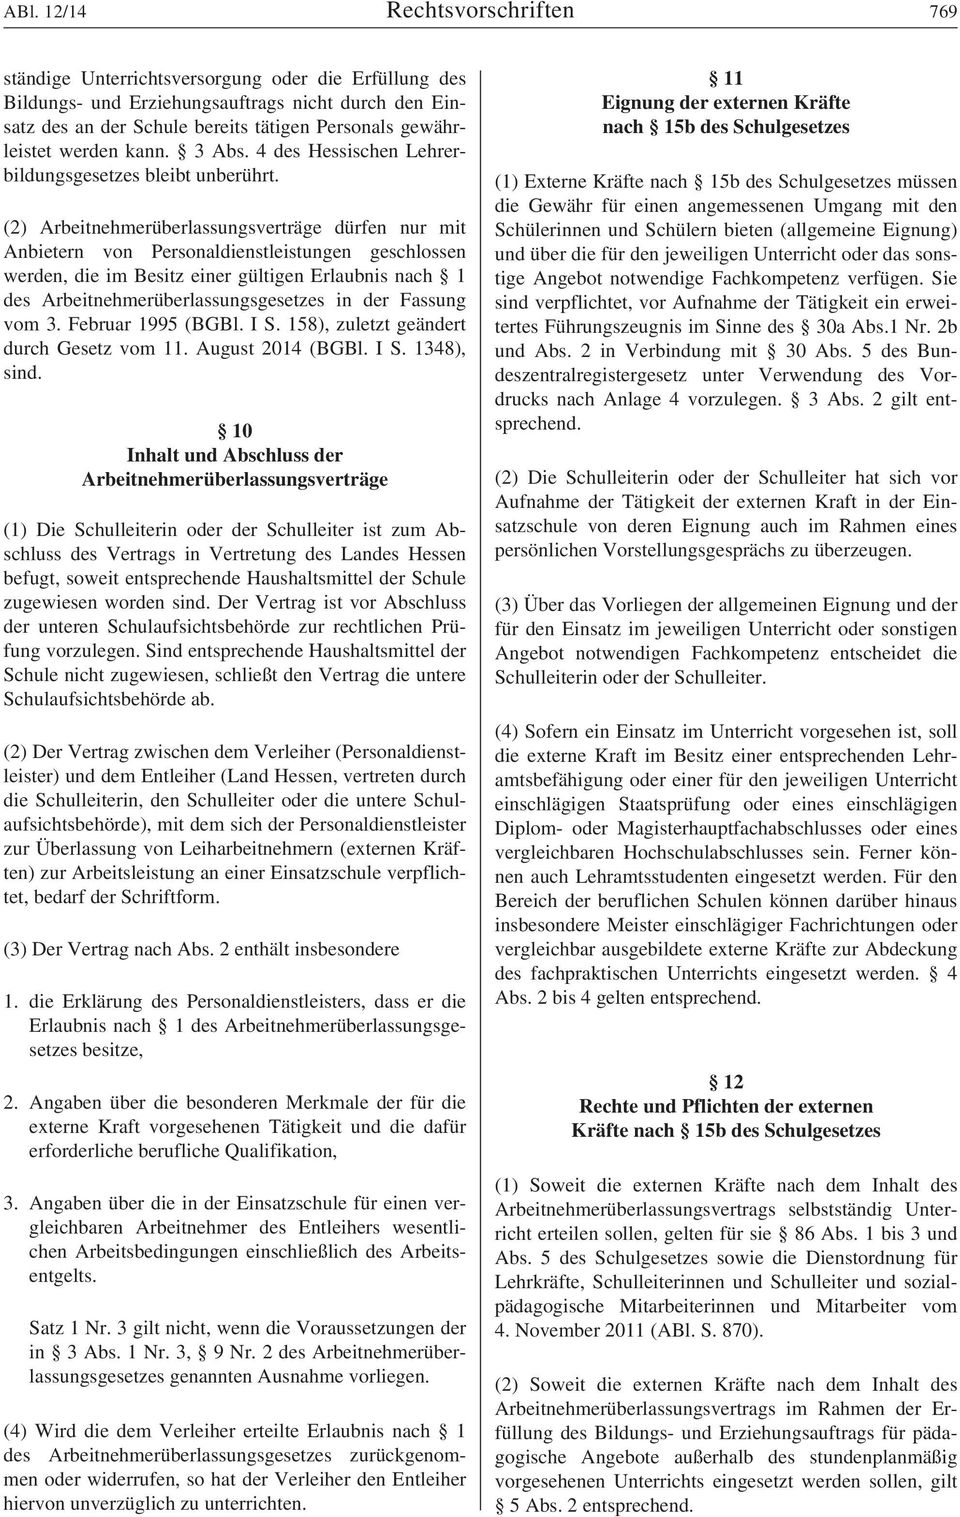 Inhaltsverzeichnis Abi 1214 Wiesbaden Den 15 Dezember Pdf